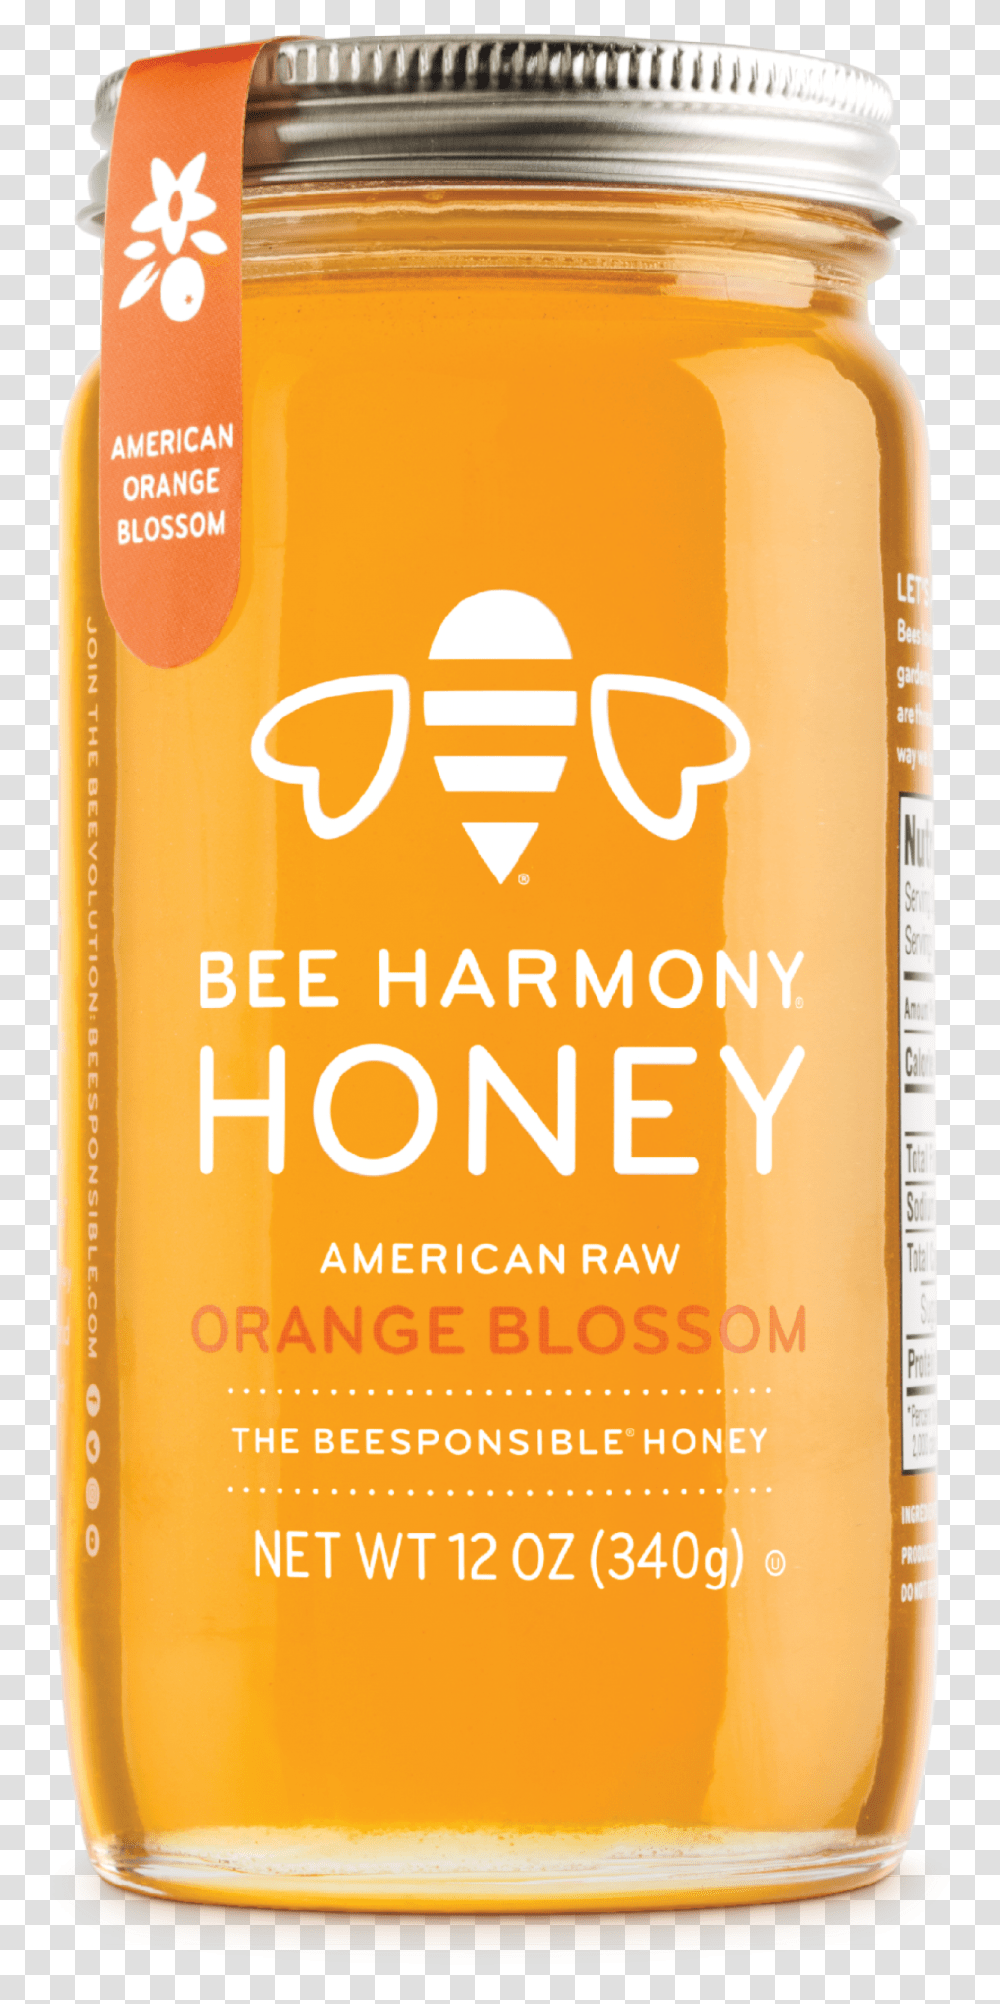 American Raw Orange Blossom Honey, Bottle, Beer, Alcohol, Beverage Transparent Png